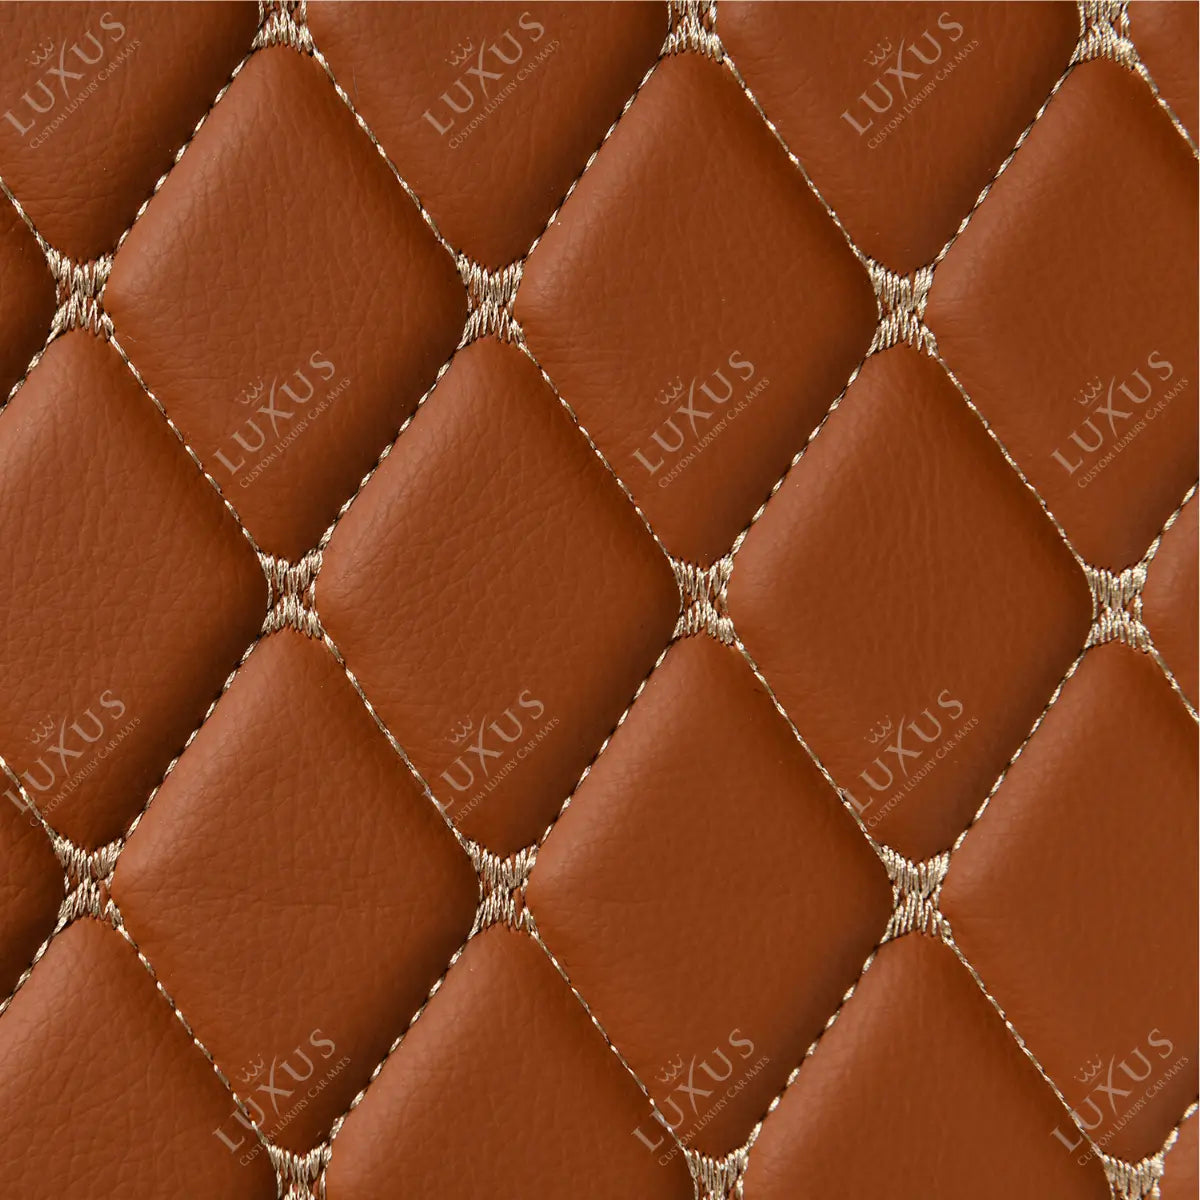 Luxus Car Mats™ - Alfombrilla para maletero/maletero de cuero de lujo en 3D marrón caramelo